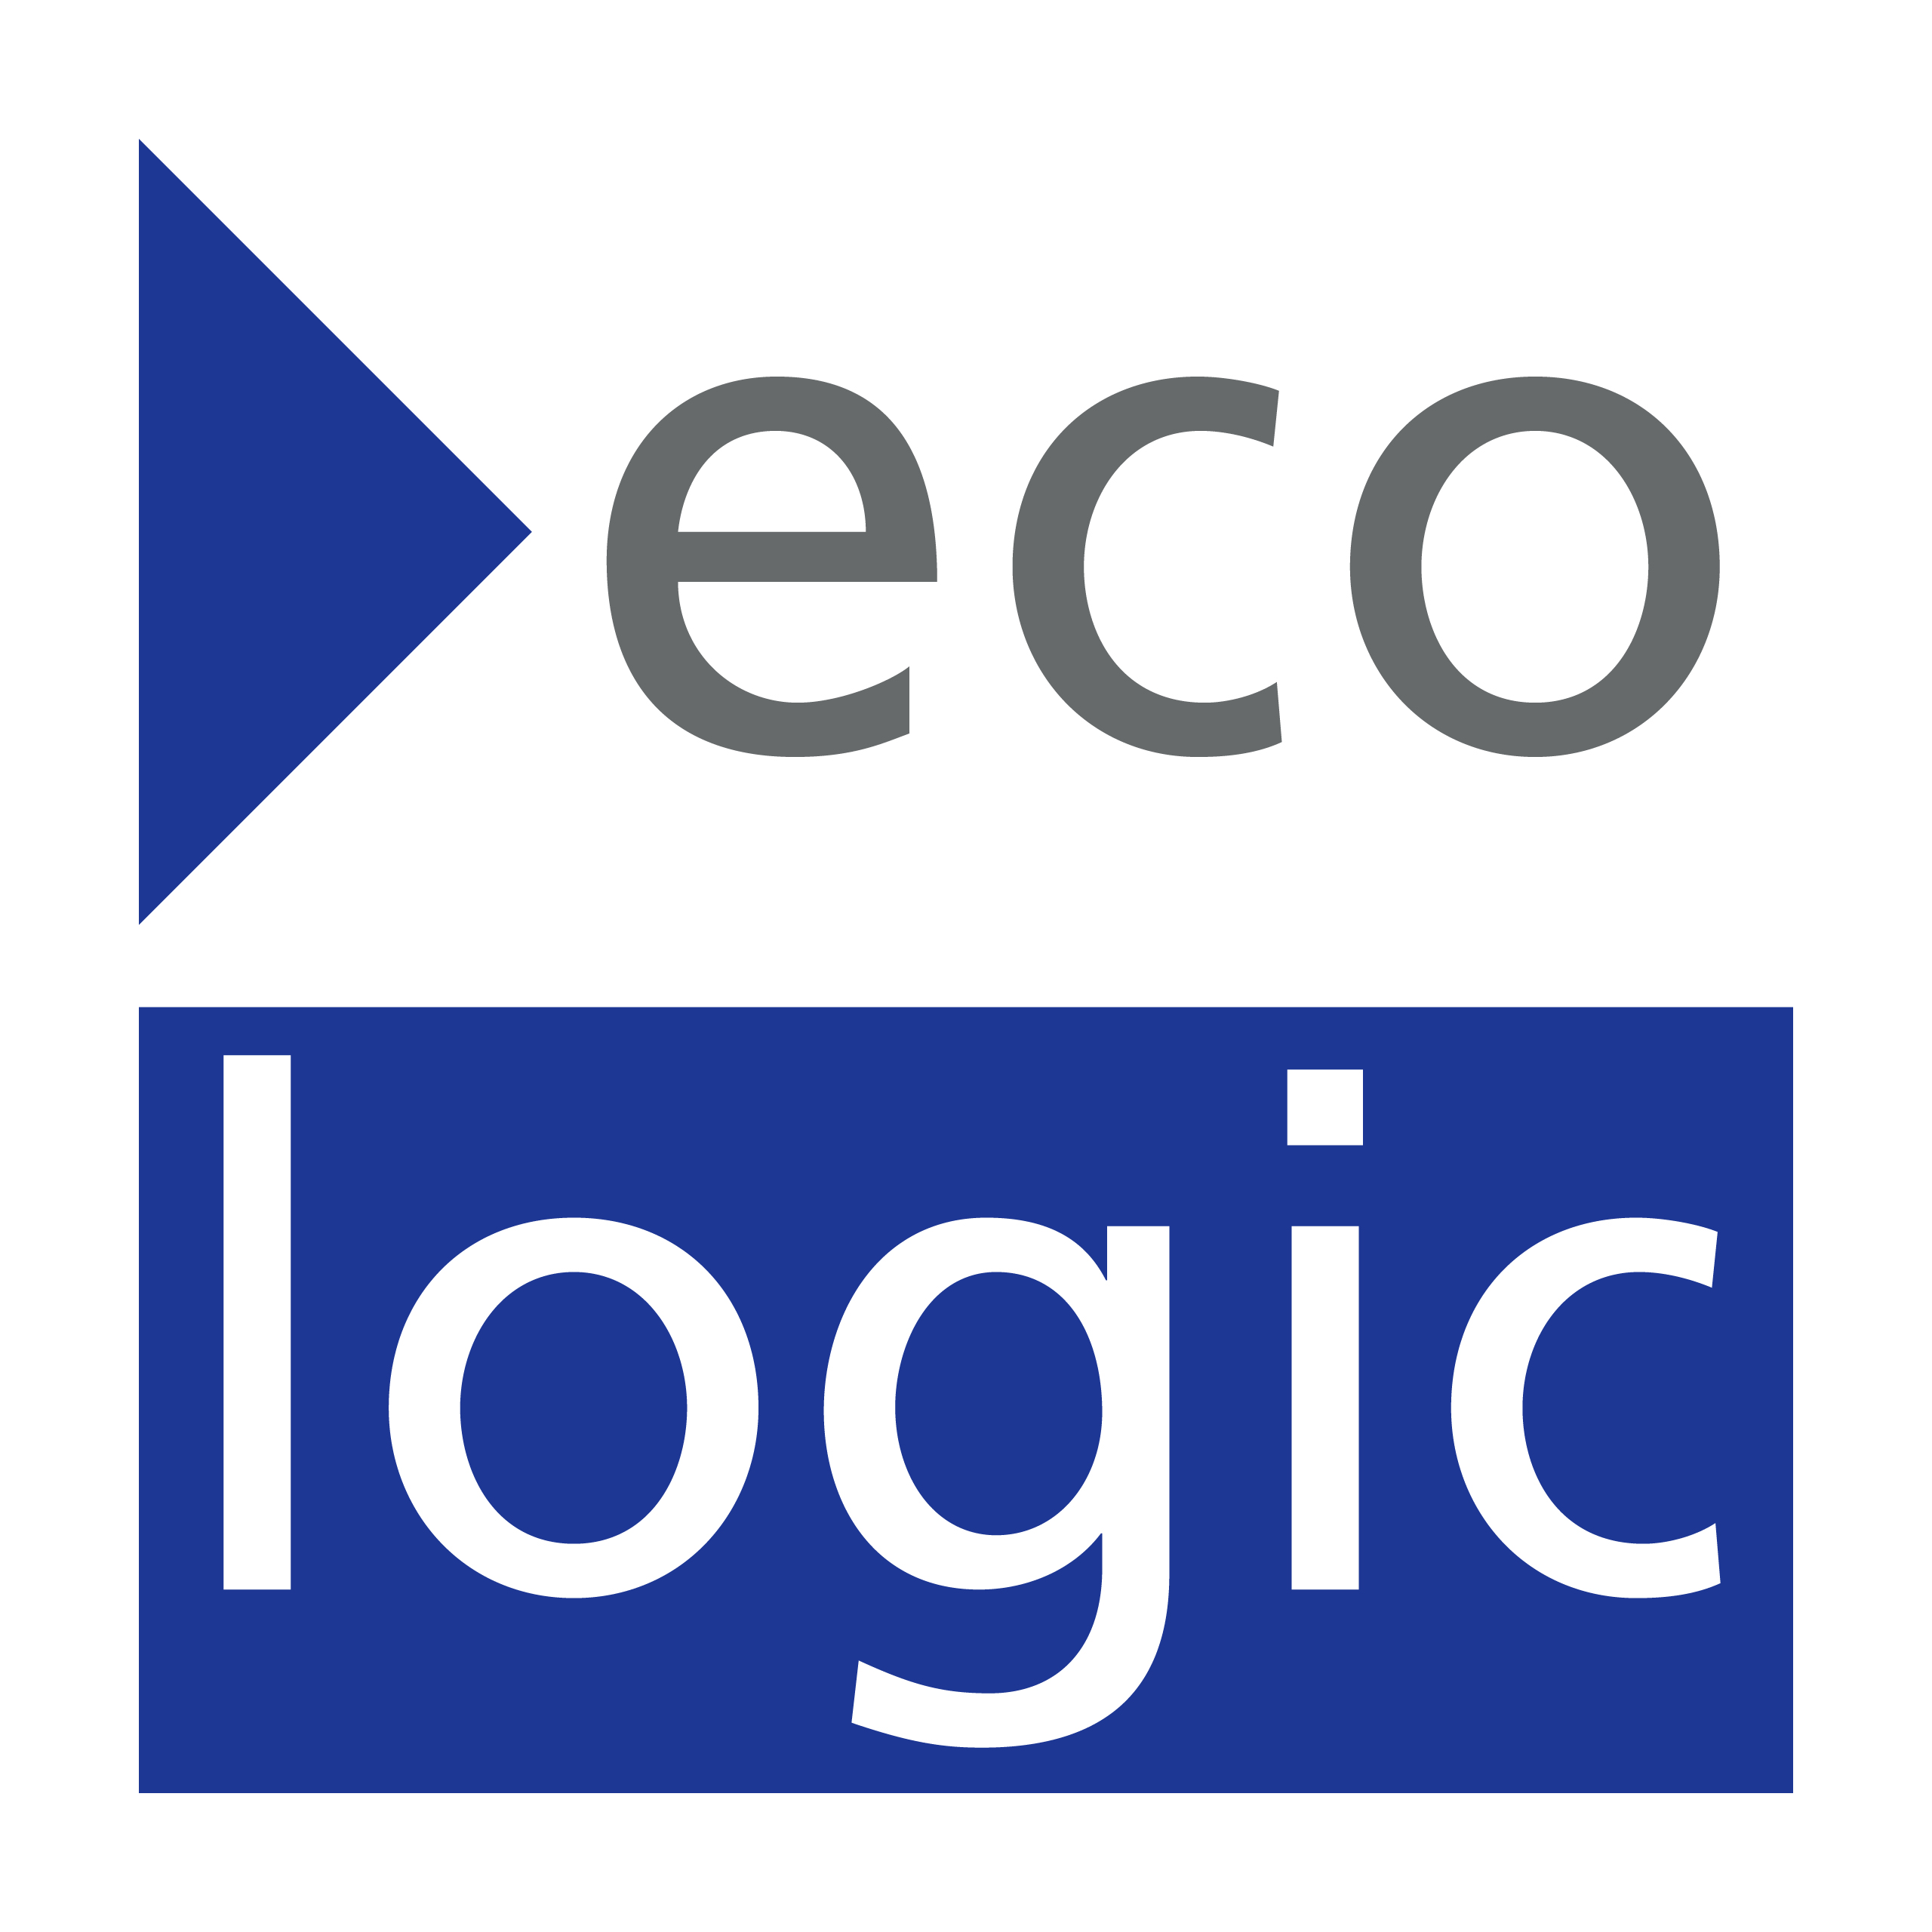 Logo Ecologic